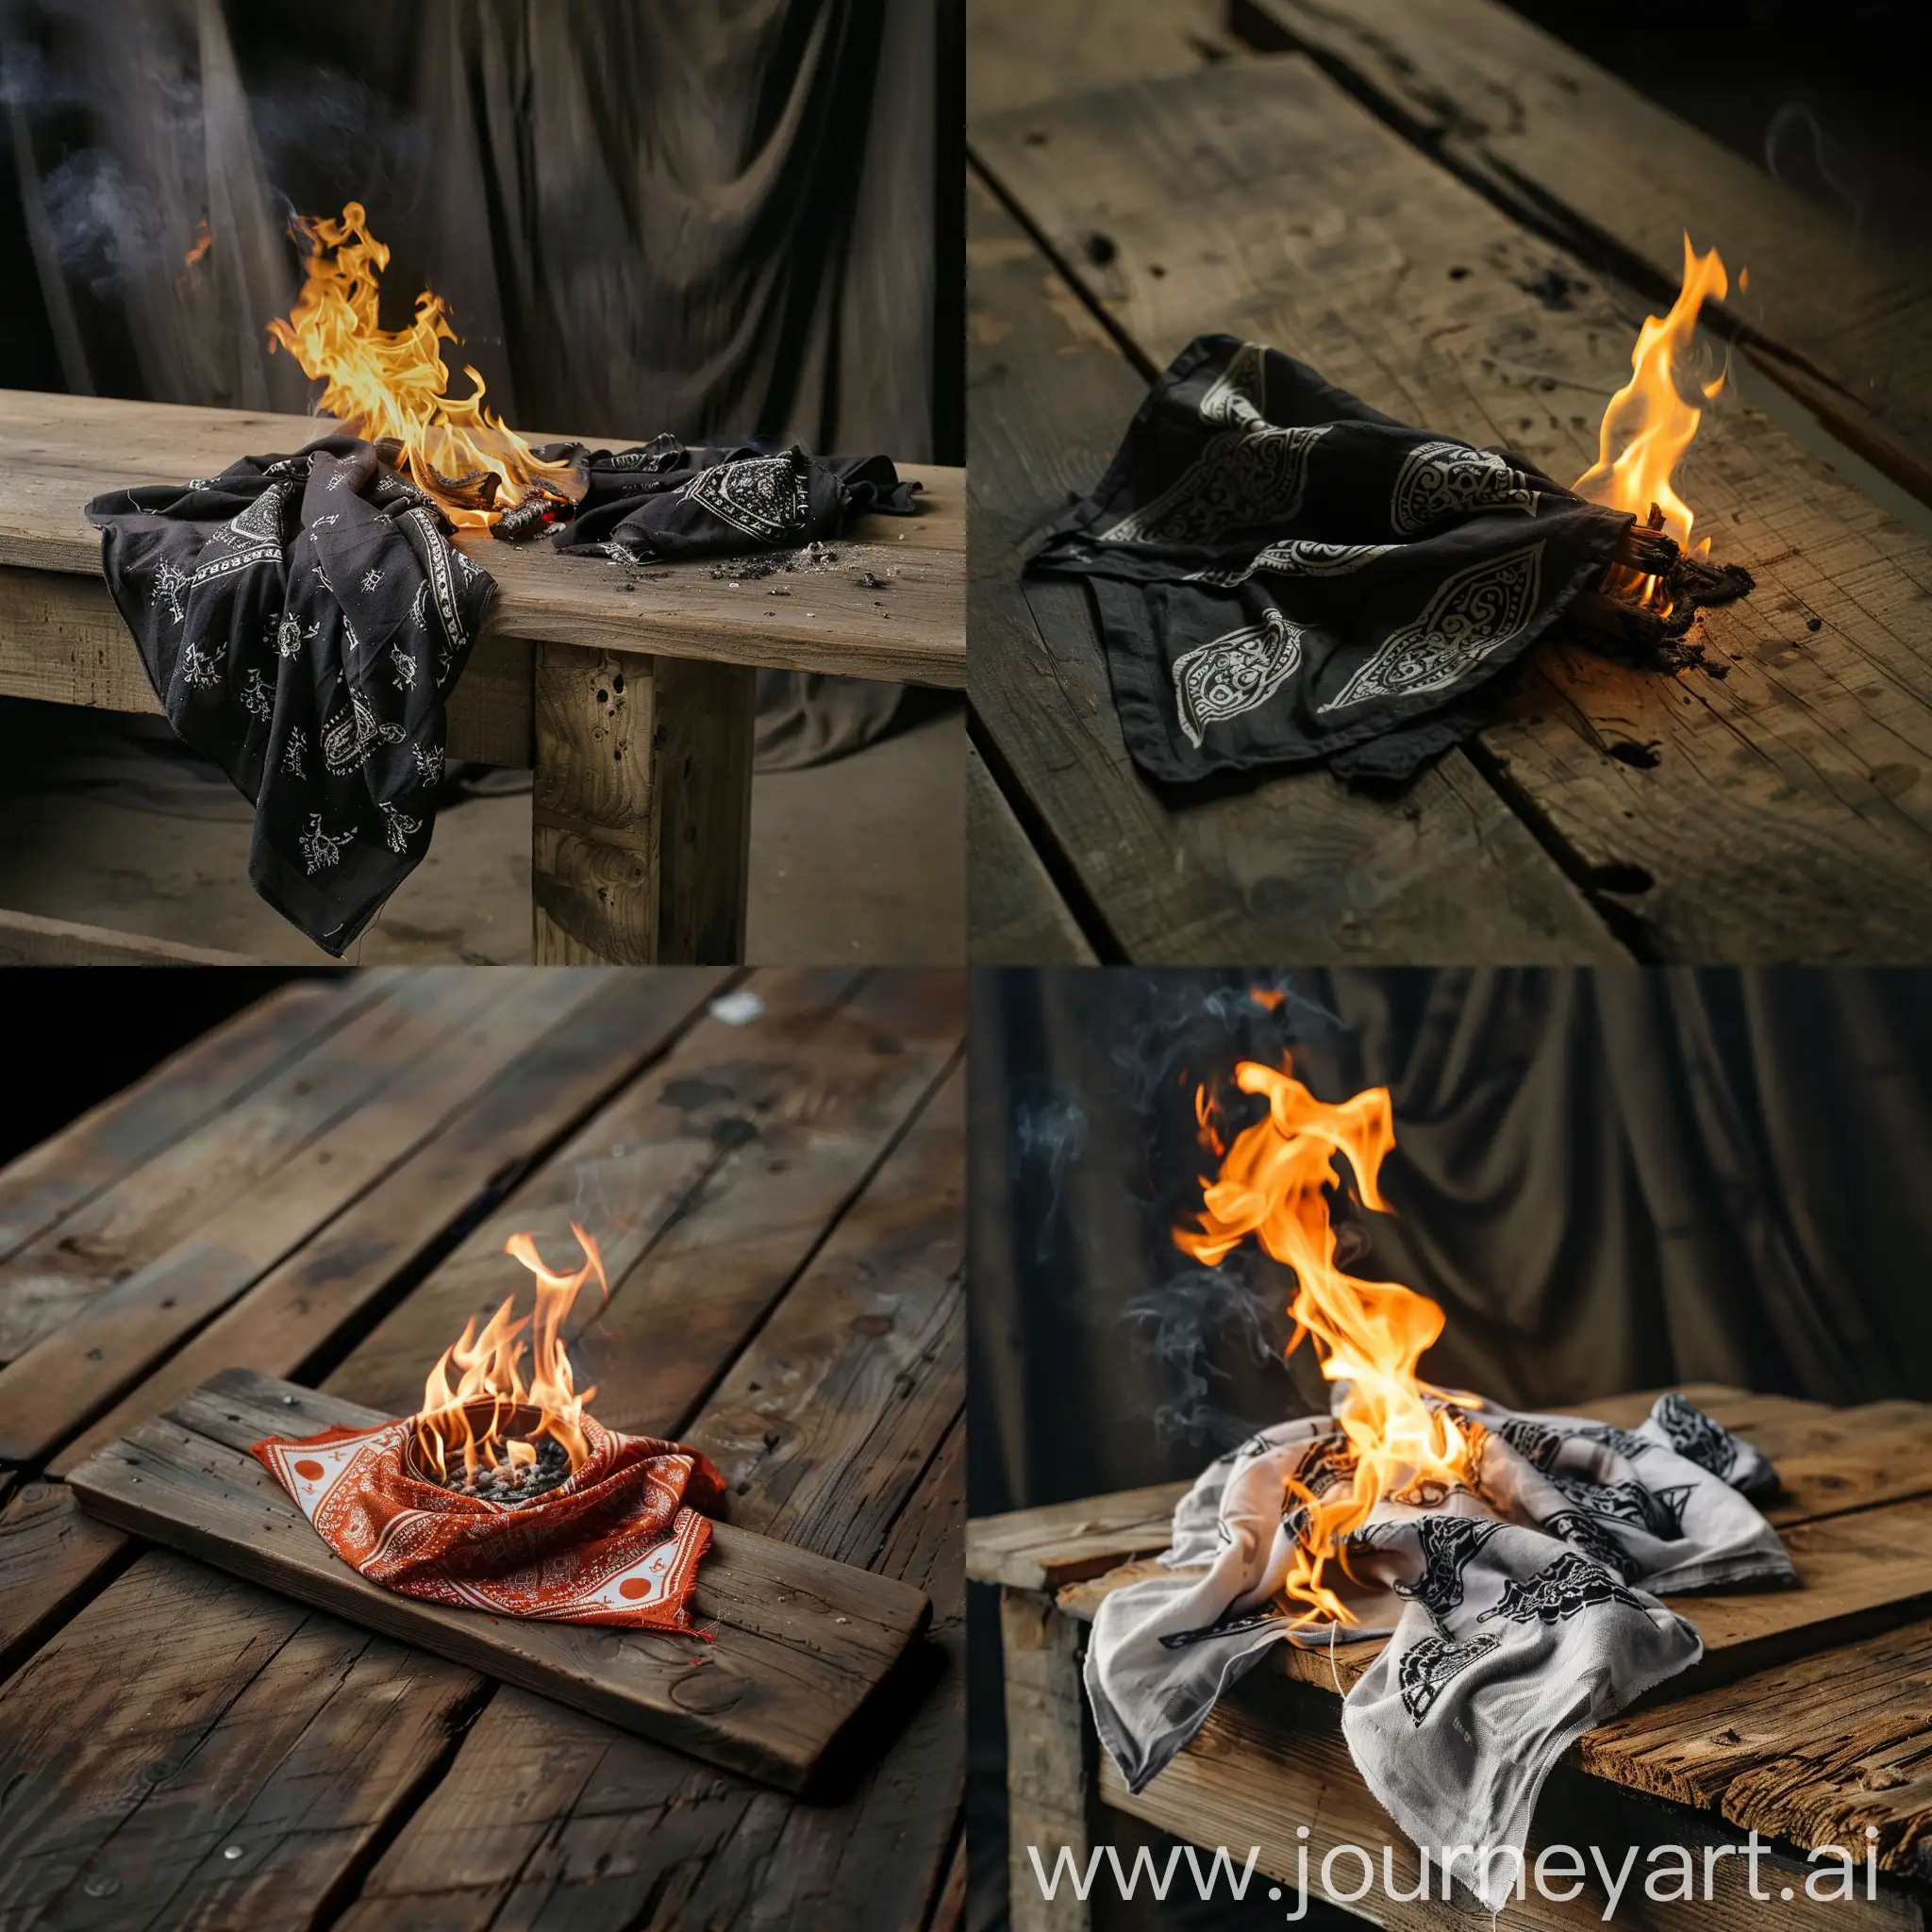 Burning-Bandana-on-Wooden-Table